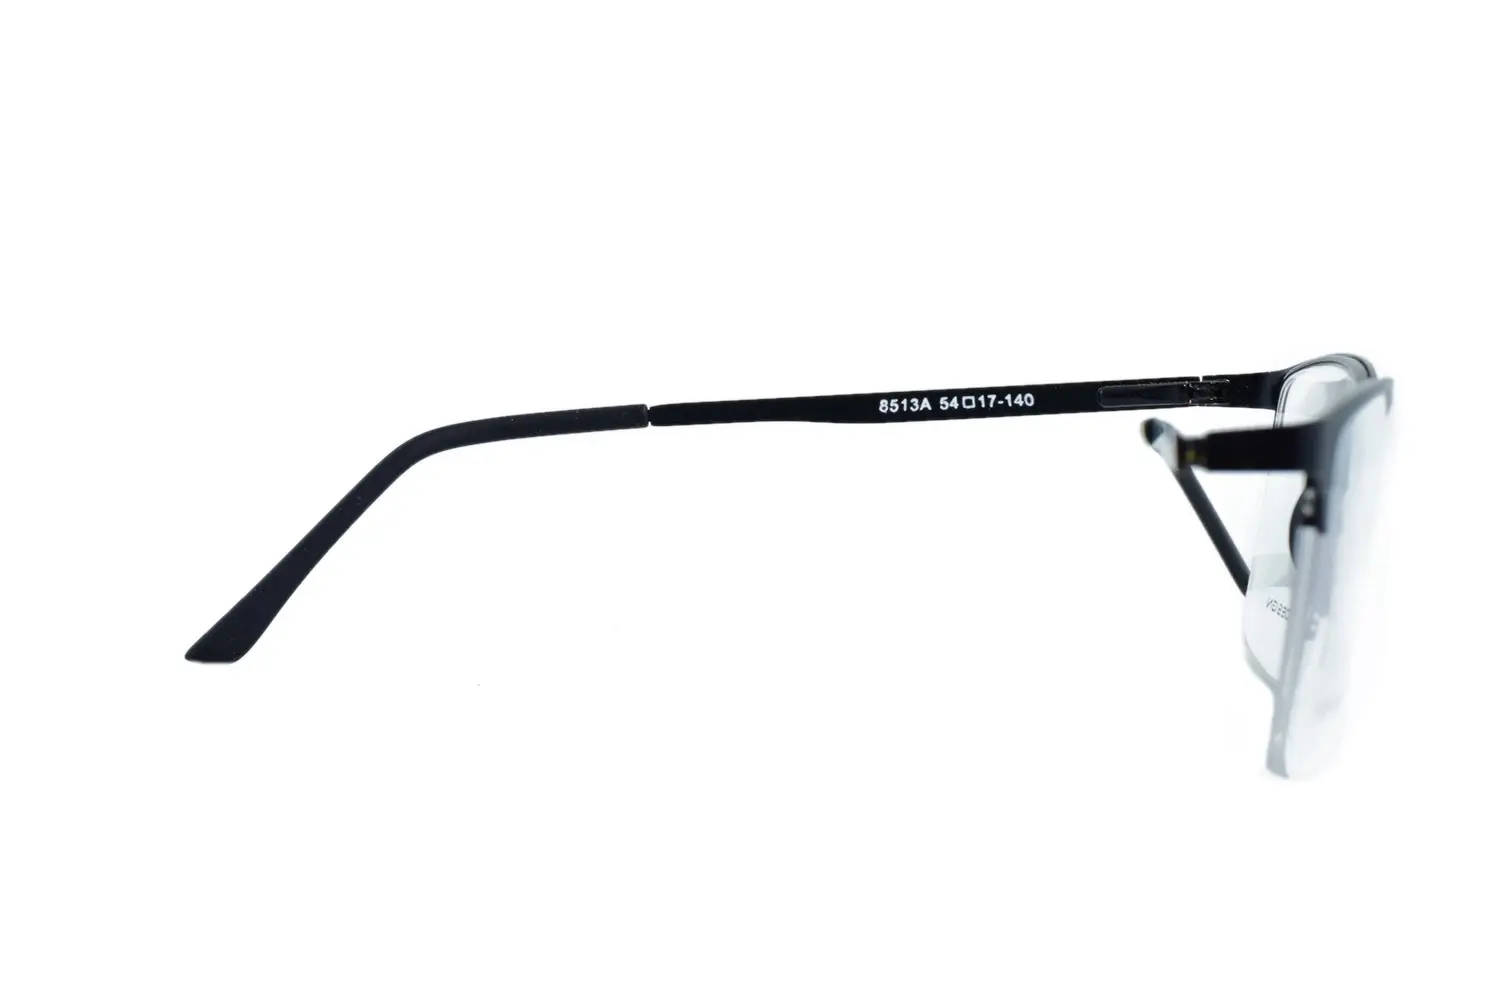 عینک طبی PORSCHE DESIGN مدل 8513A - دکترعینک